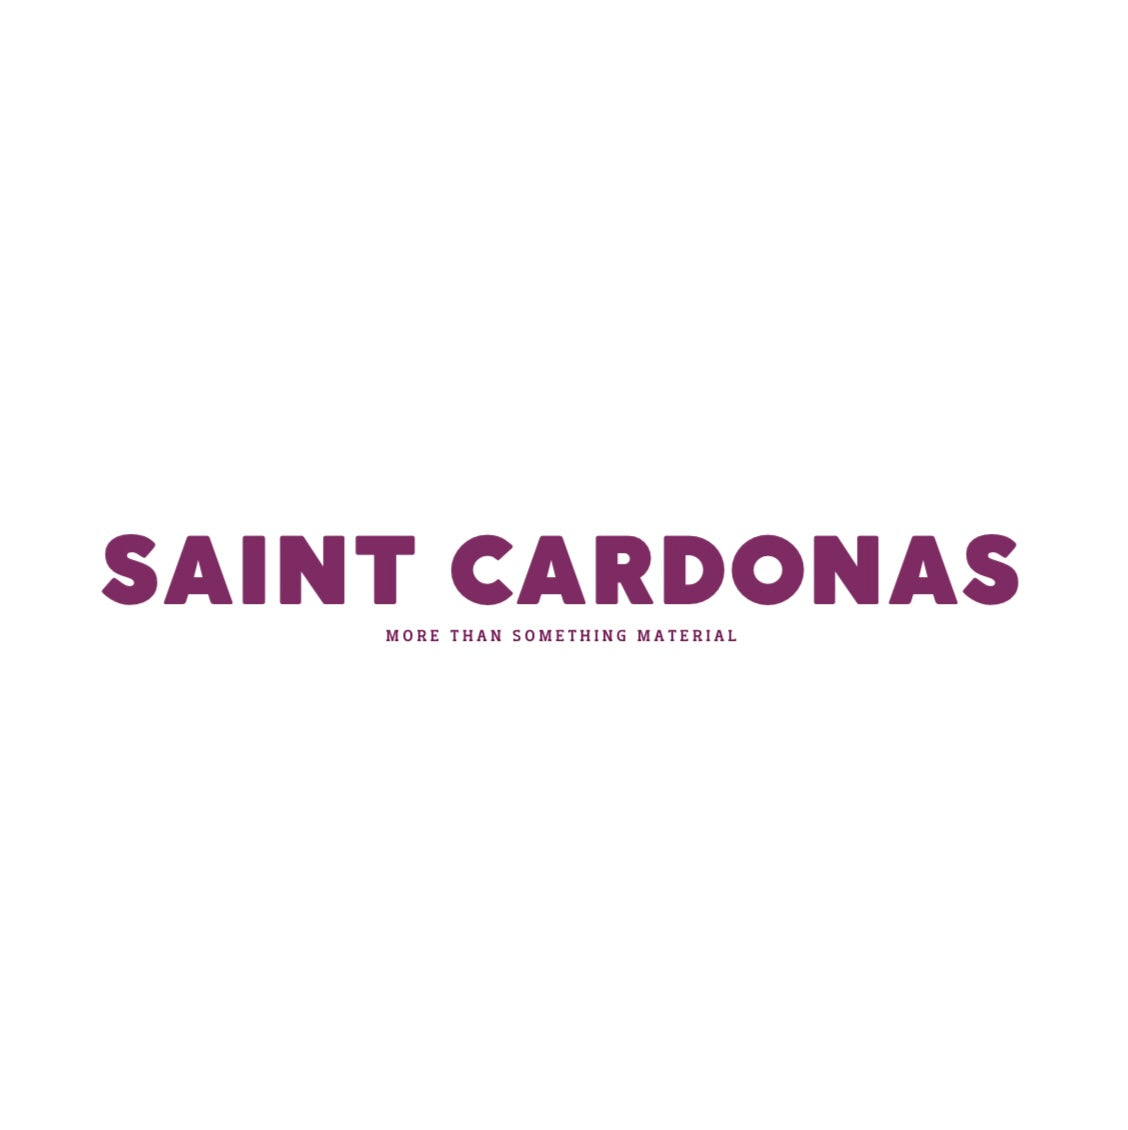 Saintcardonas – saintcardonas